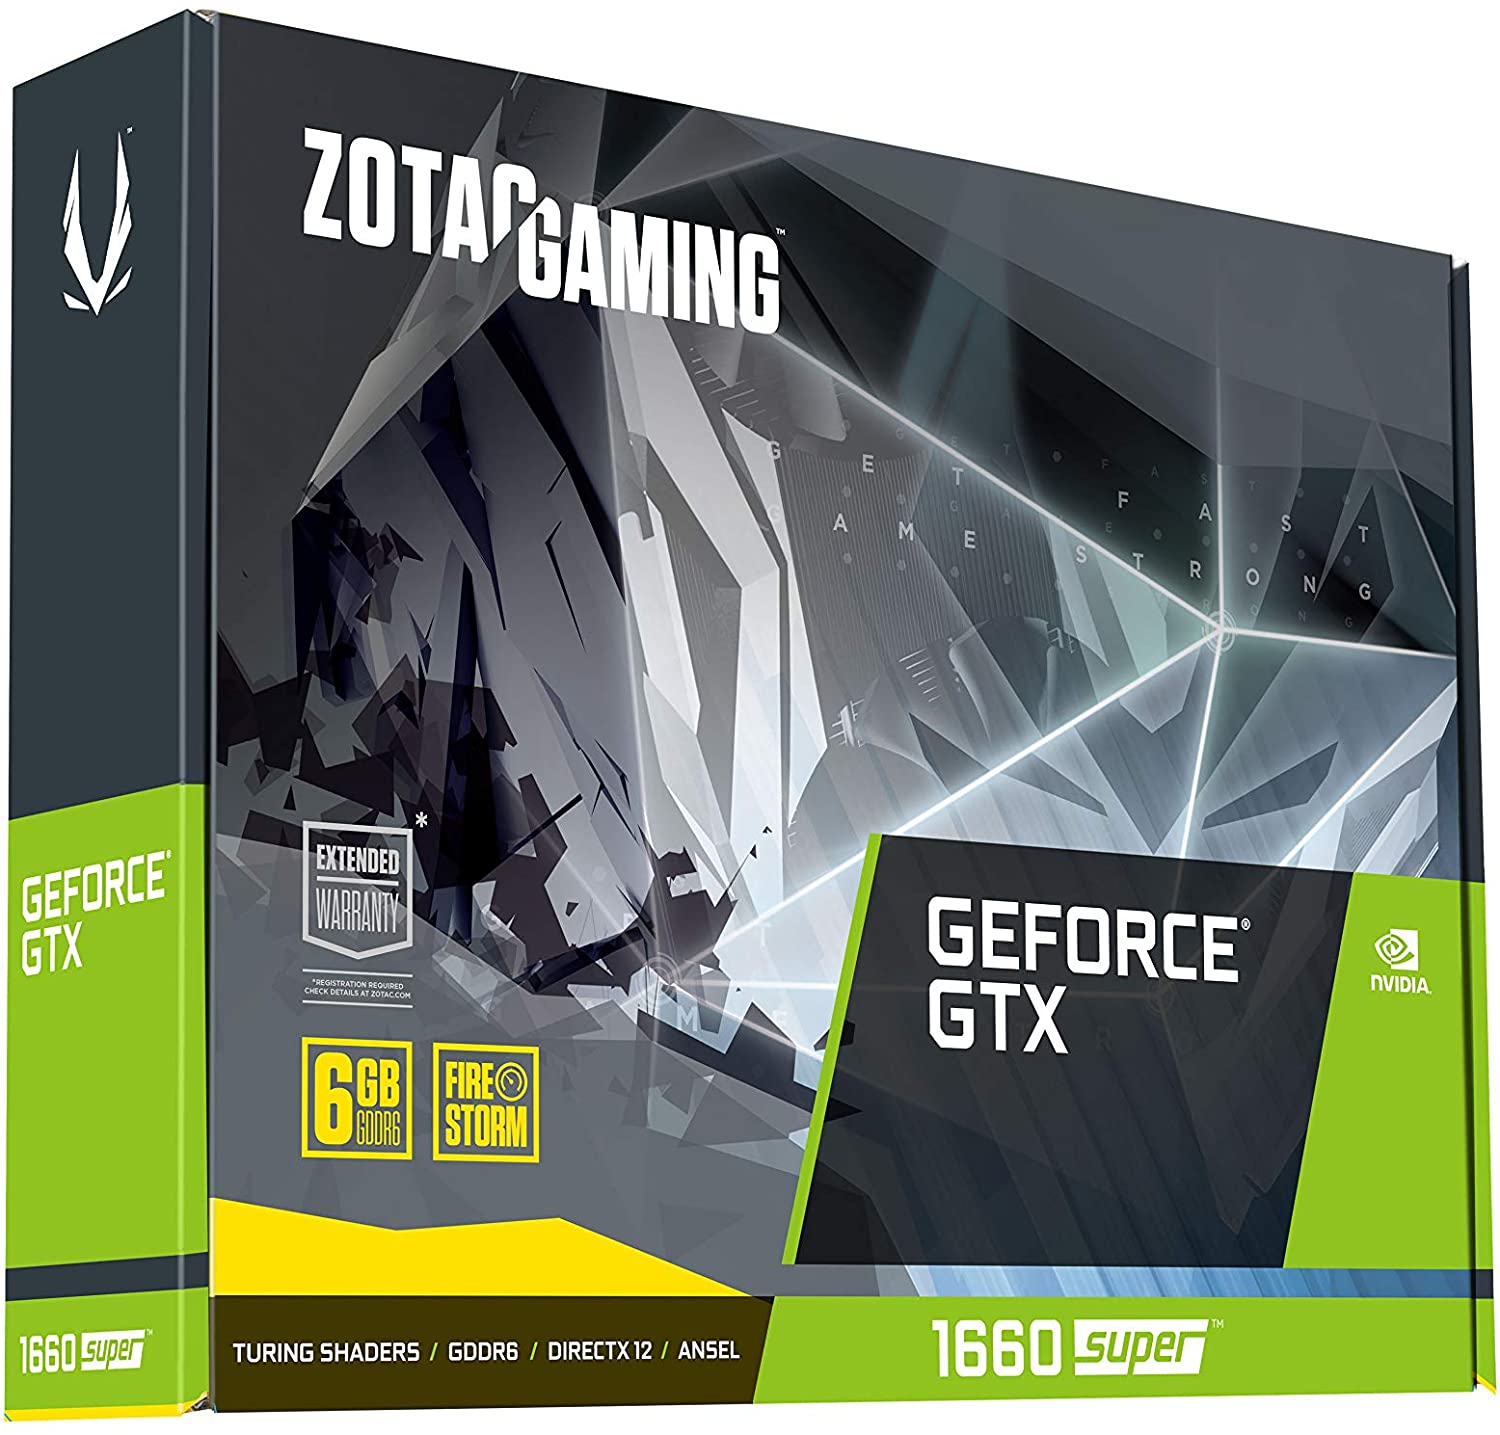 ZOTAC GAMING GeForce GTX 1660 SUPER - 6GB GDDR6